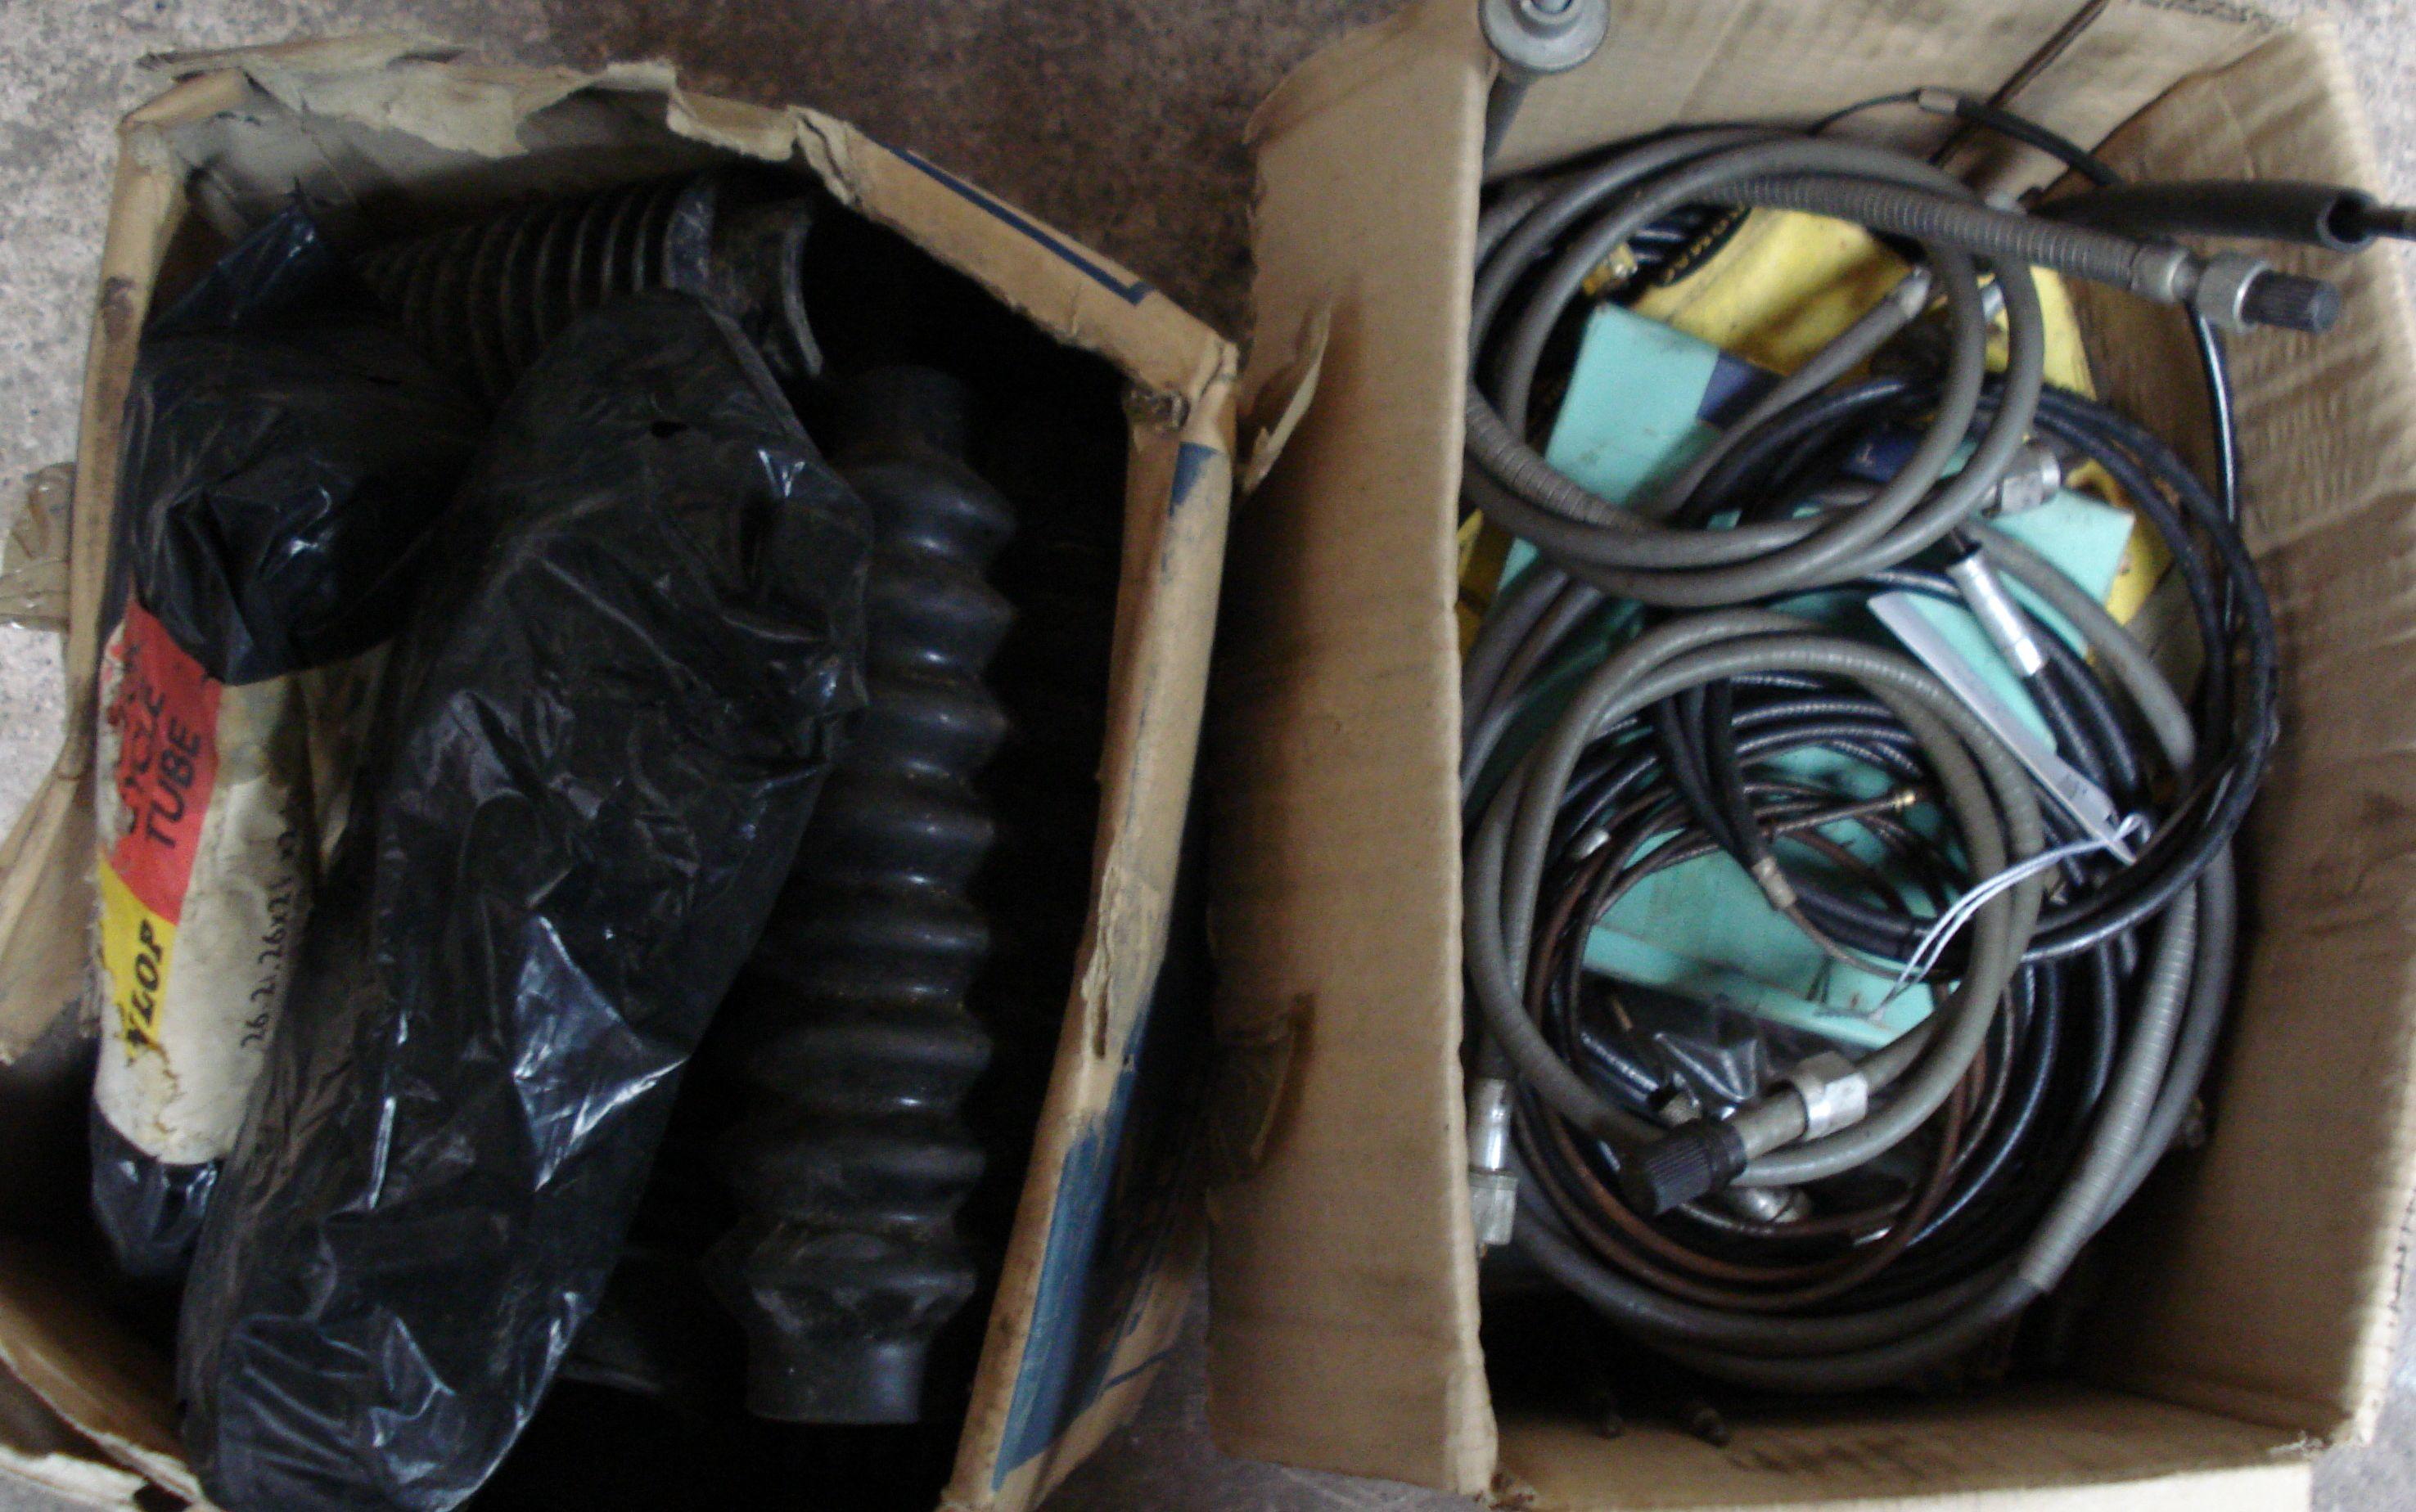 A quantity of assorted NOS rubber goods,